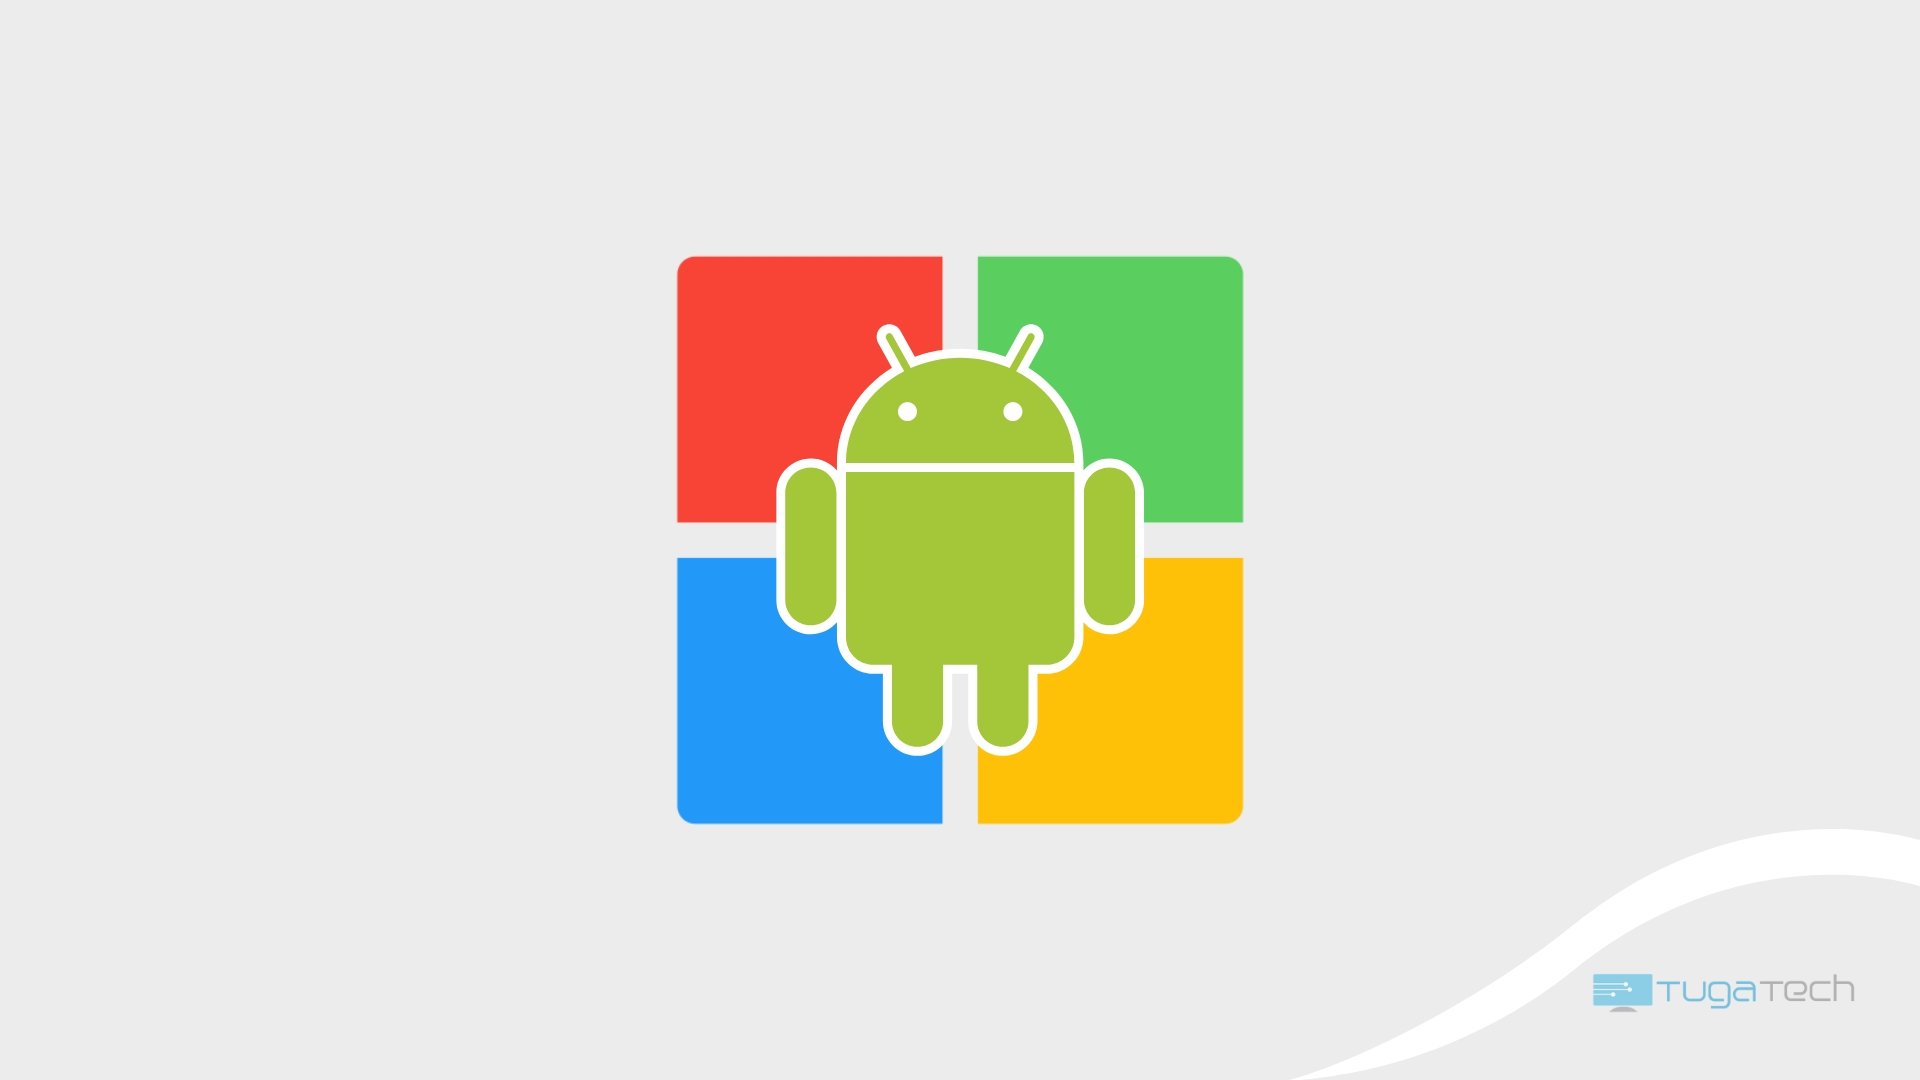 Android em cima do logo da Microsoft